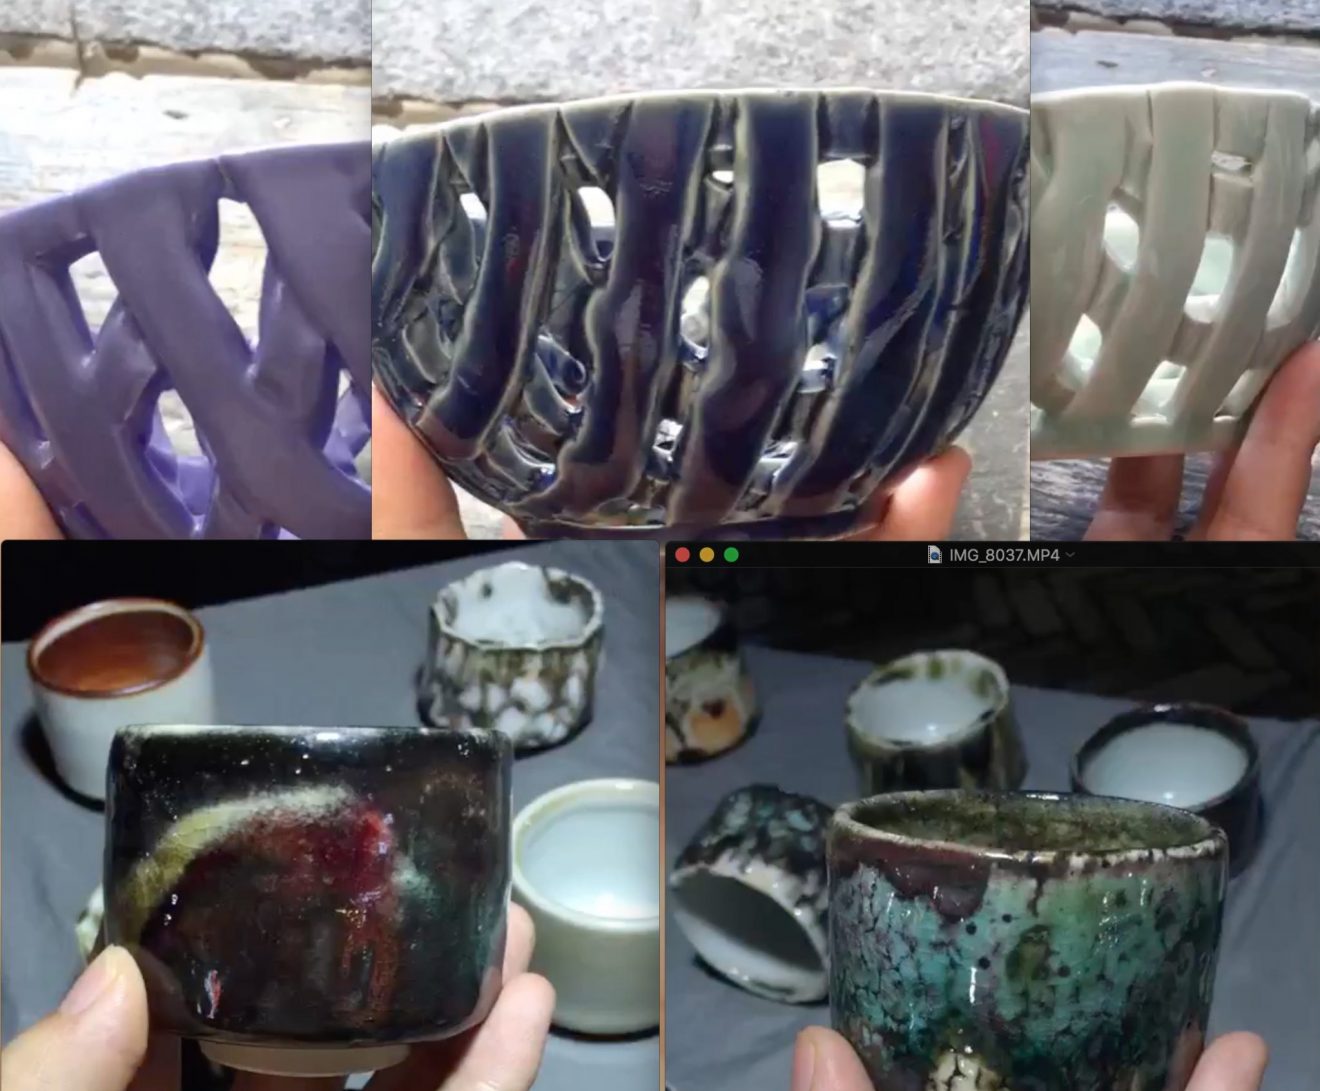 New Ceramics